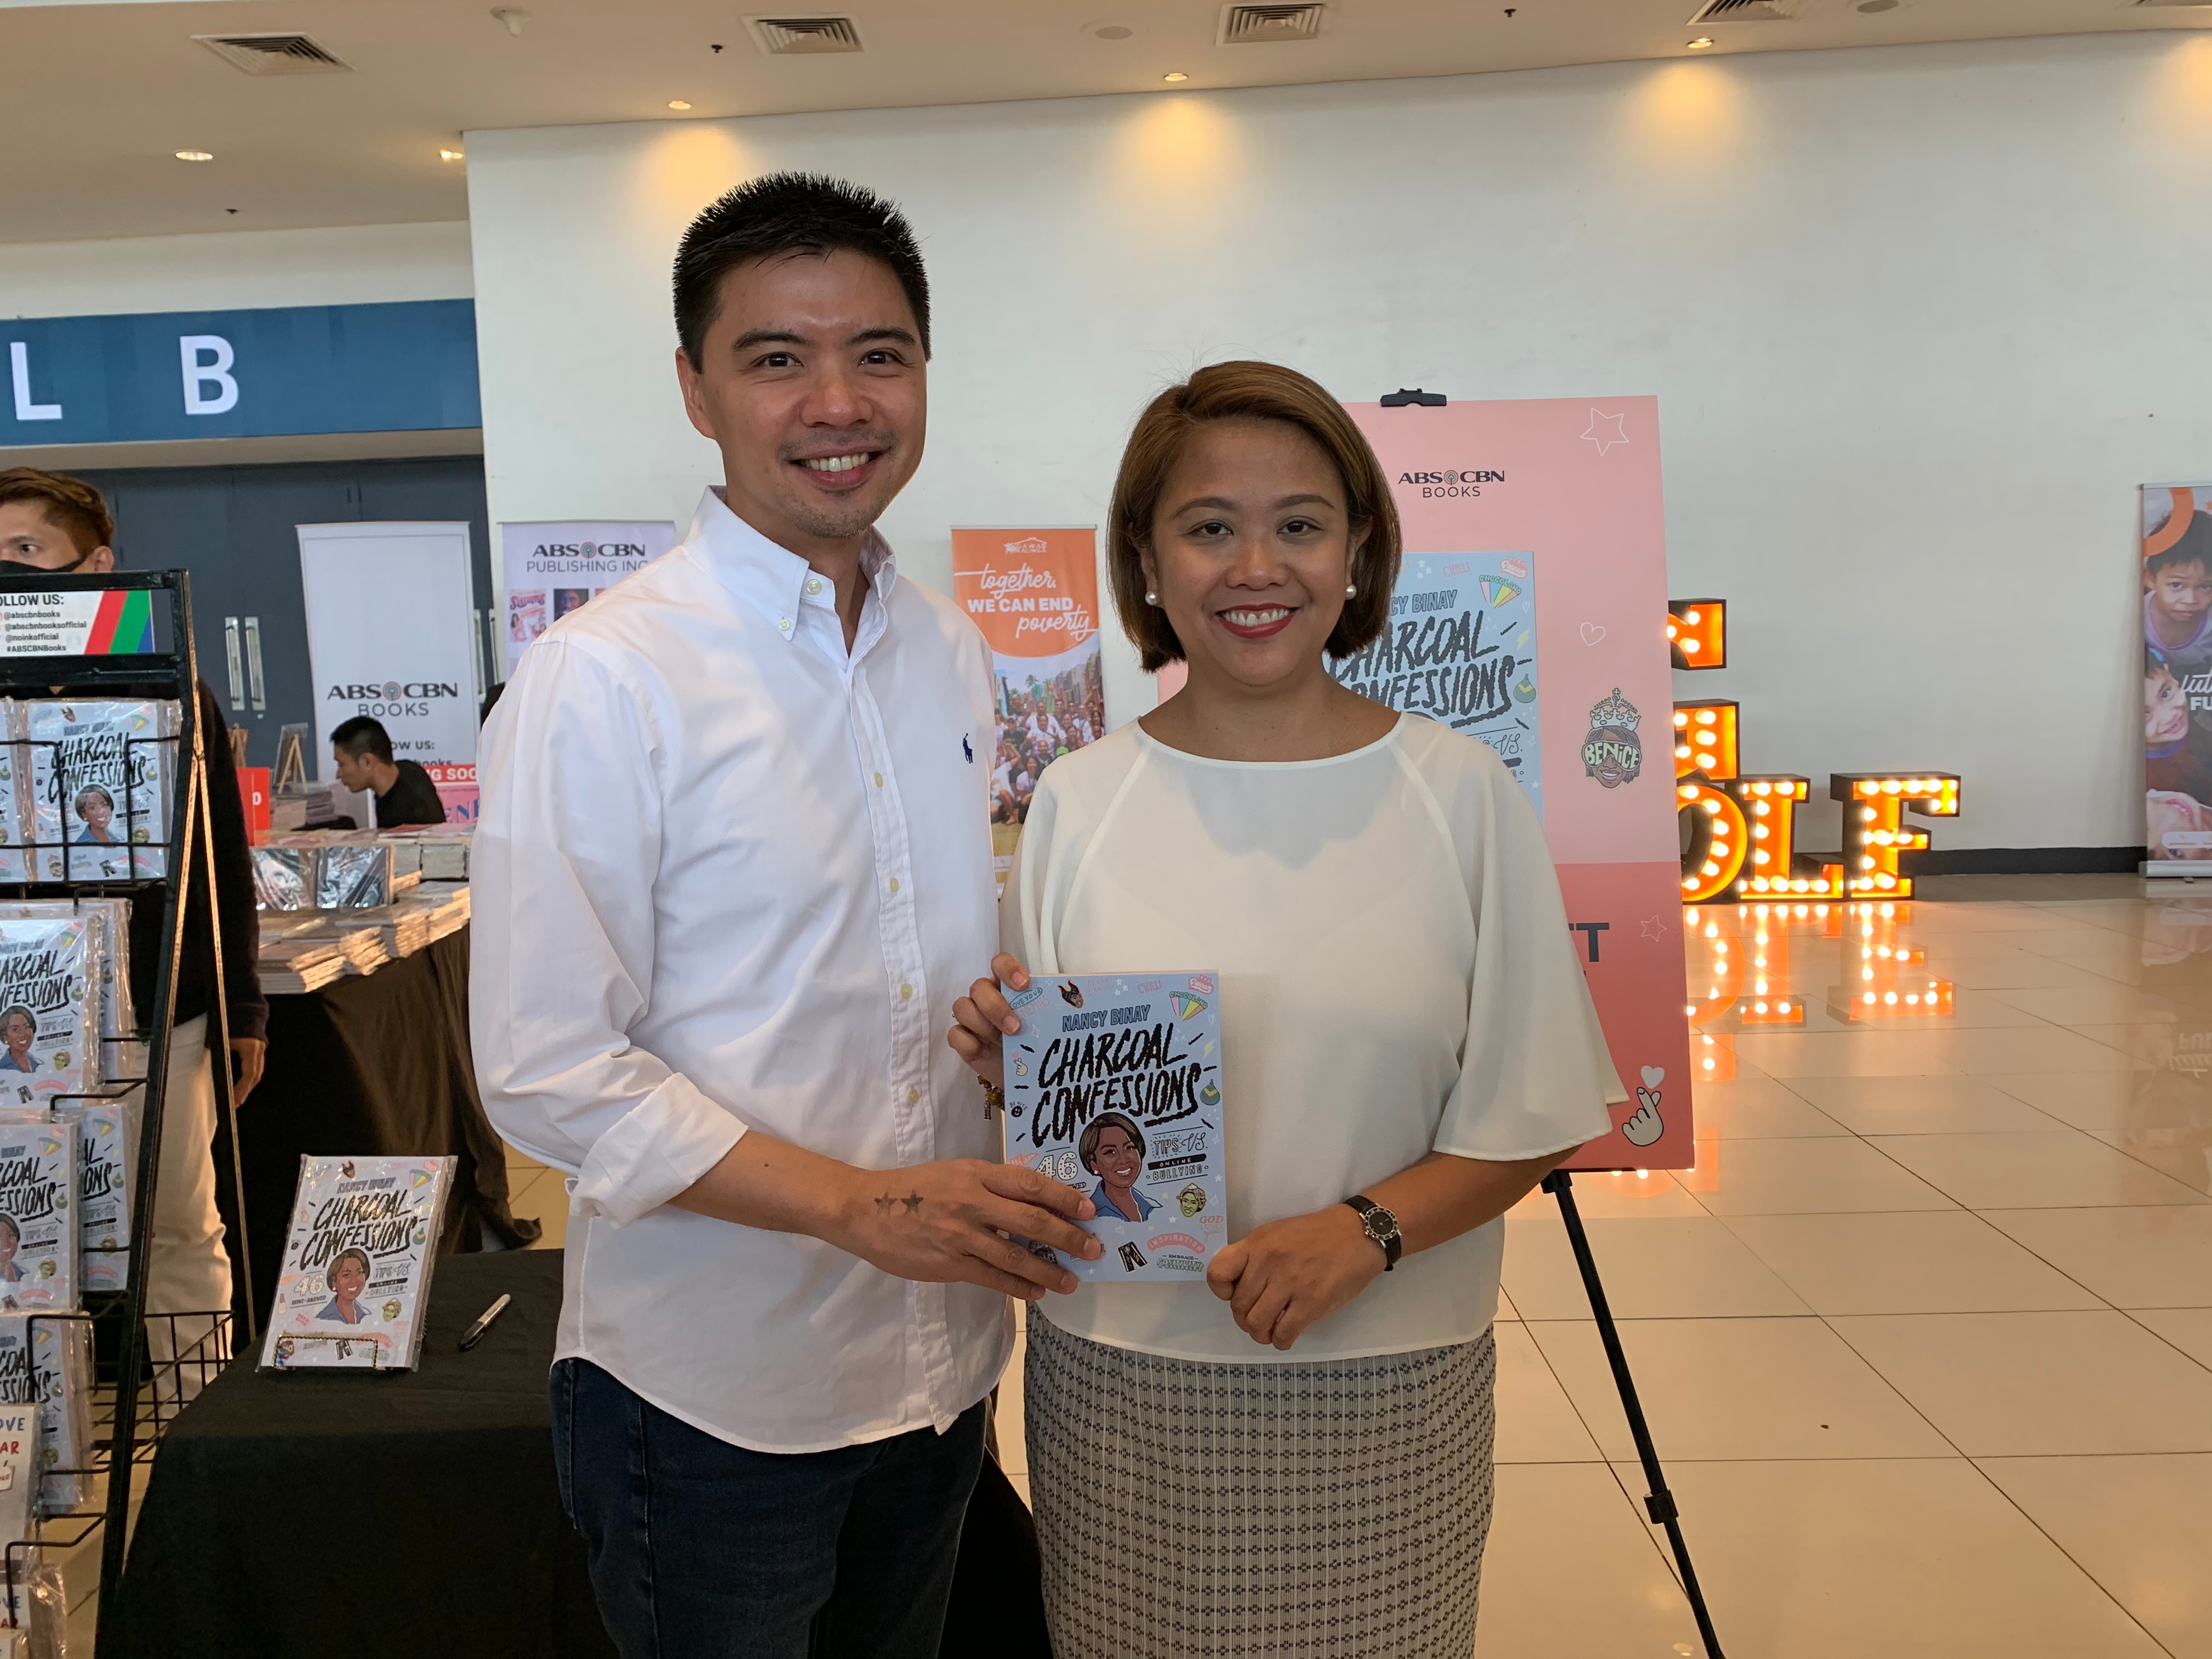 Senator Binay with ABS CBN Books head Mark Yambot